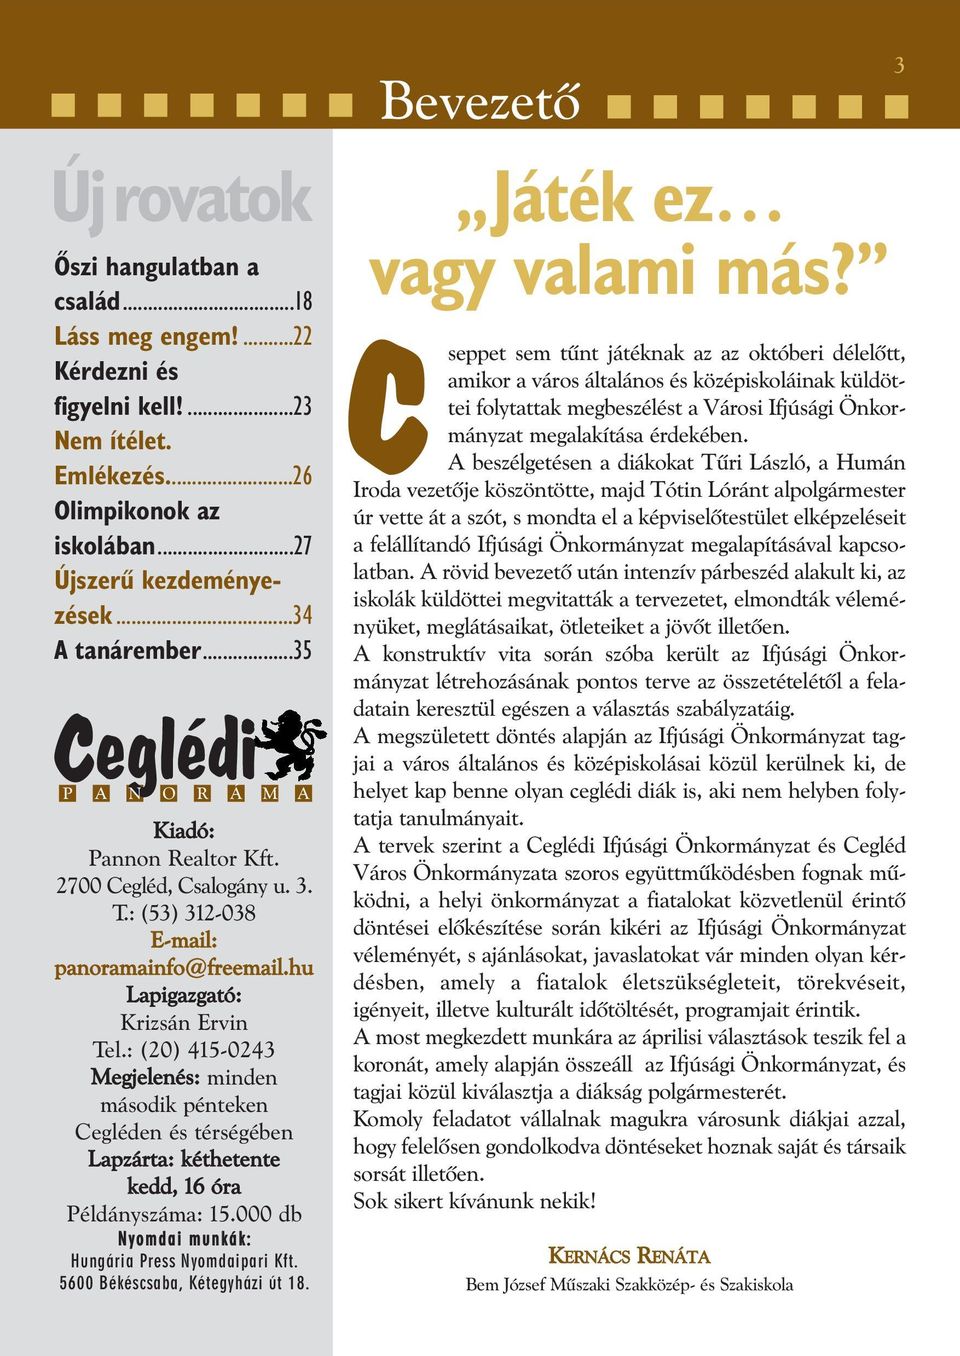 : (20) 415-0243 Megjelenés: minden második pénteken Cegléden és térségében Lapzárta: kéthetente kedd, 16 óra Példányszáma: 15.000 db Nyomdai munkák: Hungária Press Nyomdaipari Kft.